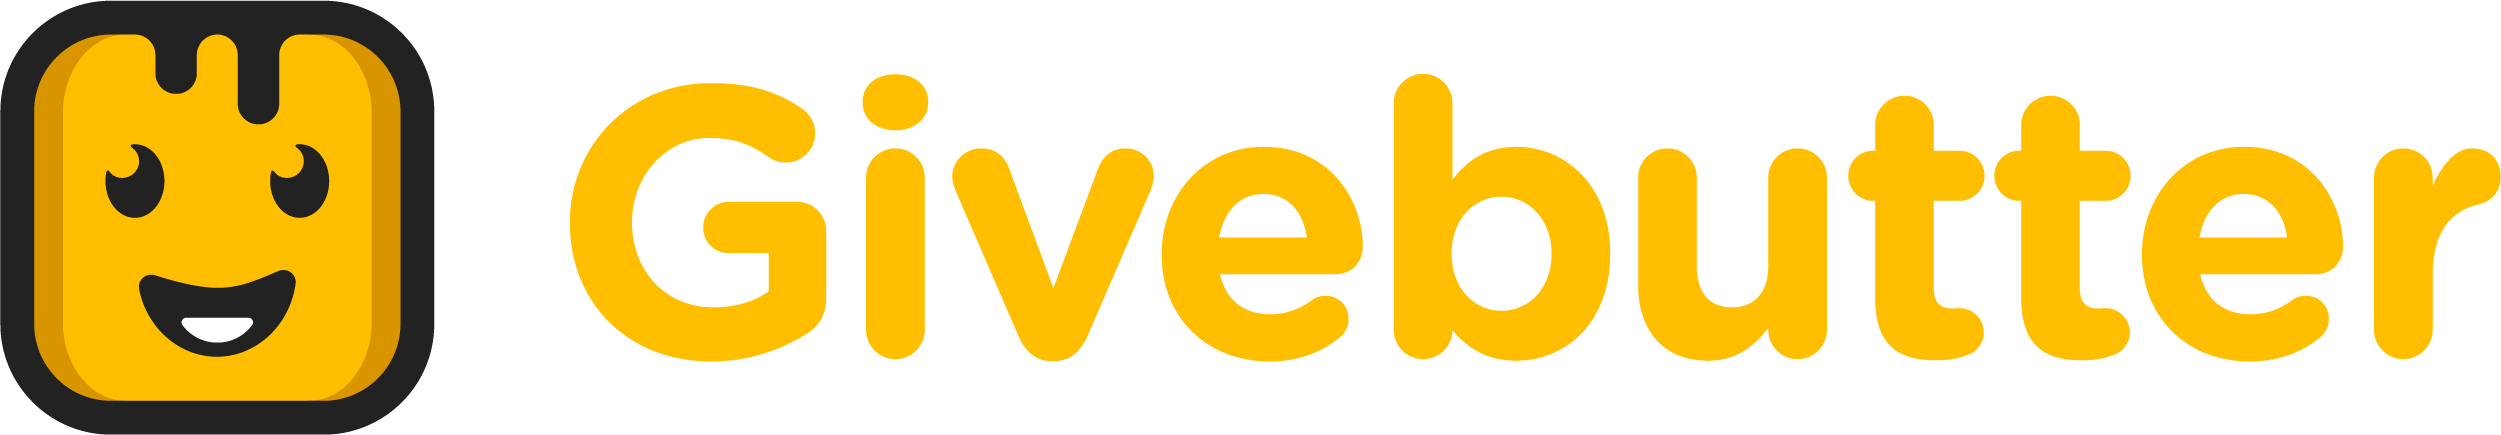 GiveButter logo